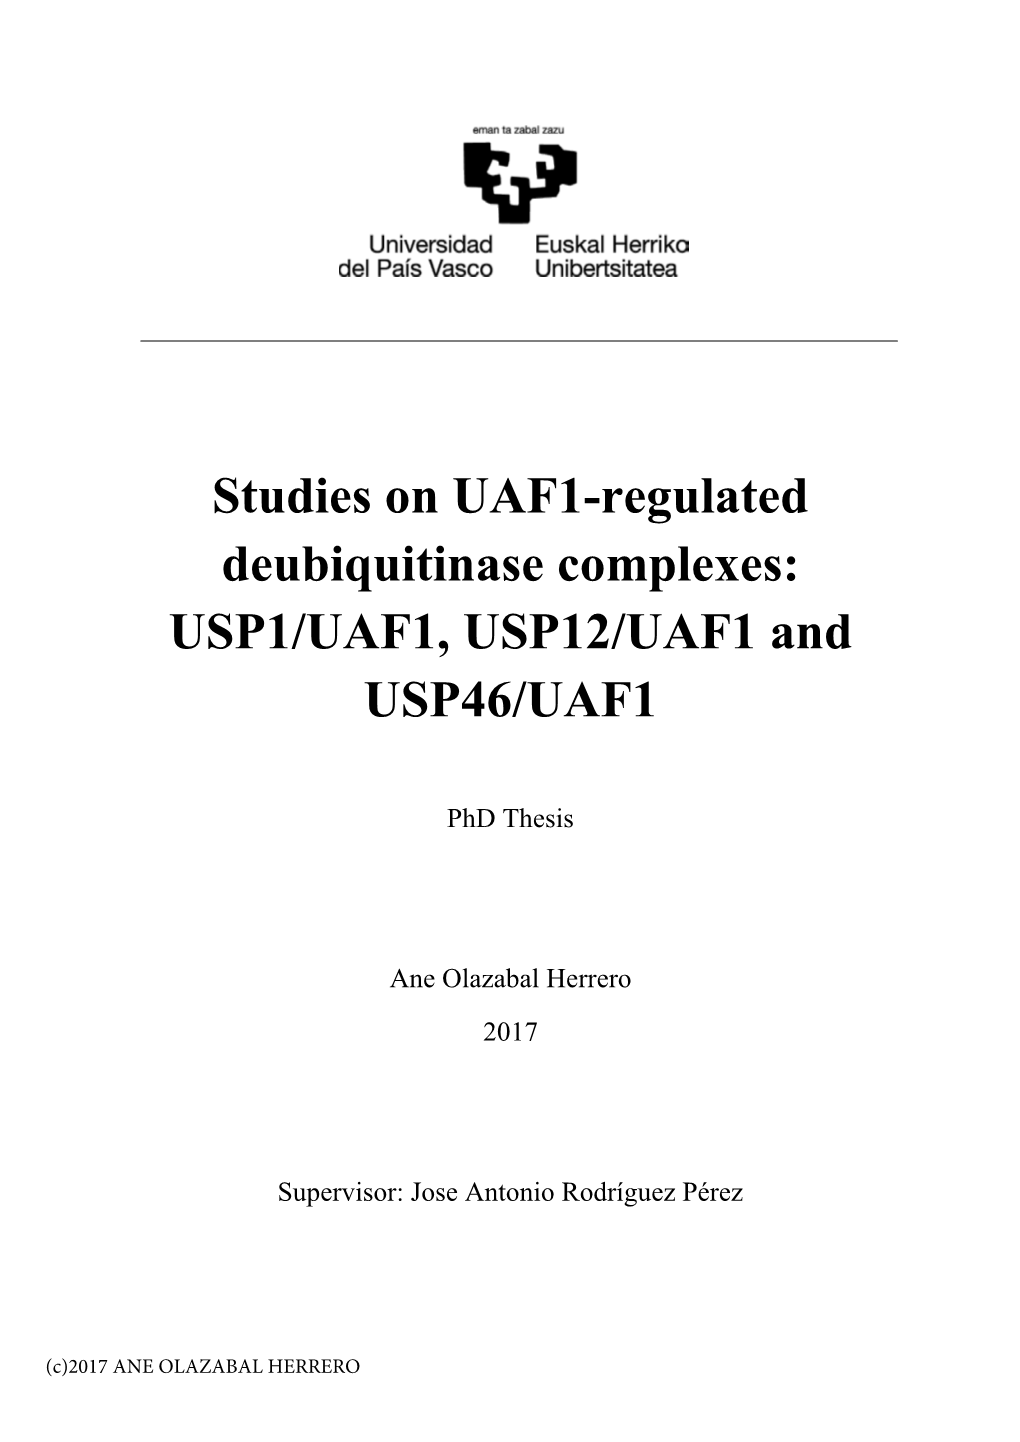 Studies on UAF1-Regulated Deubiquitinase Complexes: USP1/UAF1, USP12/UAF1 and USP46/UAF1